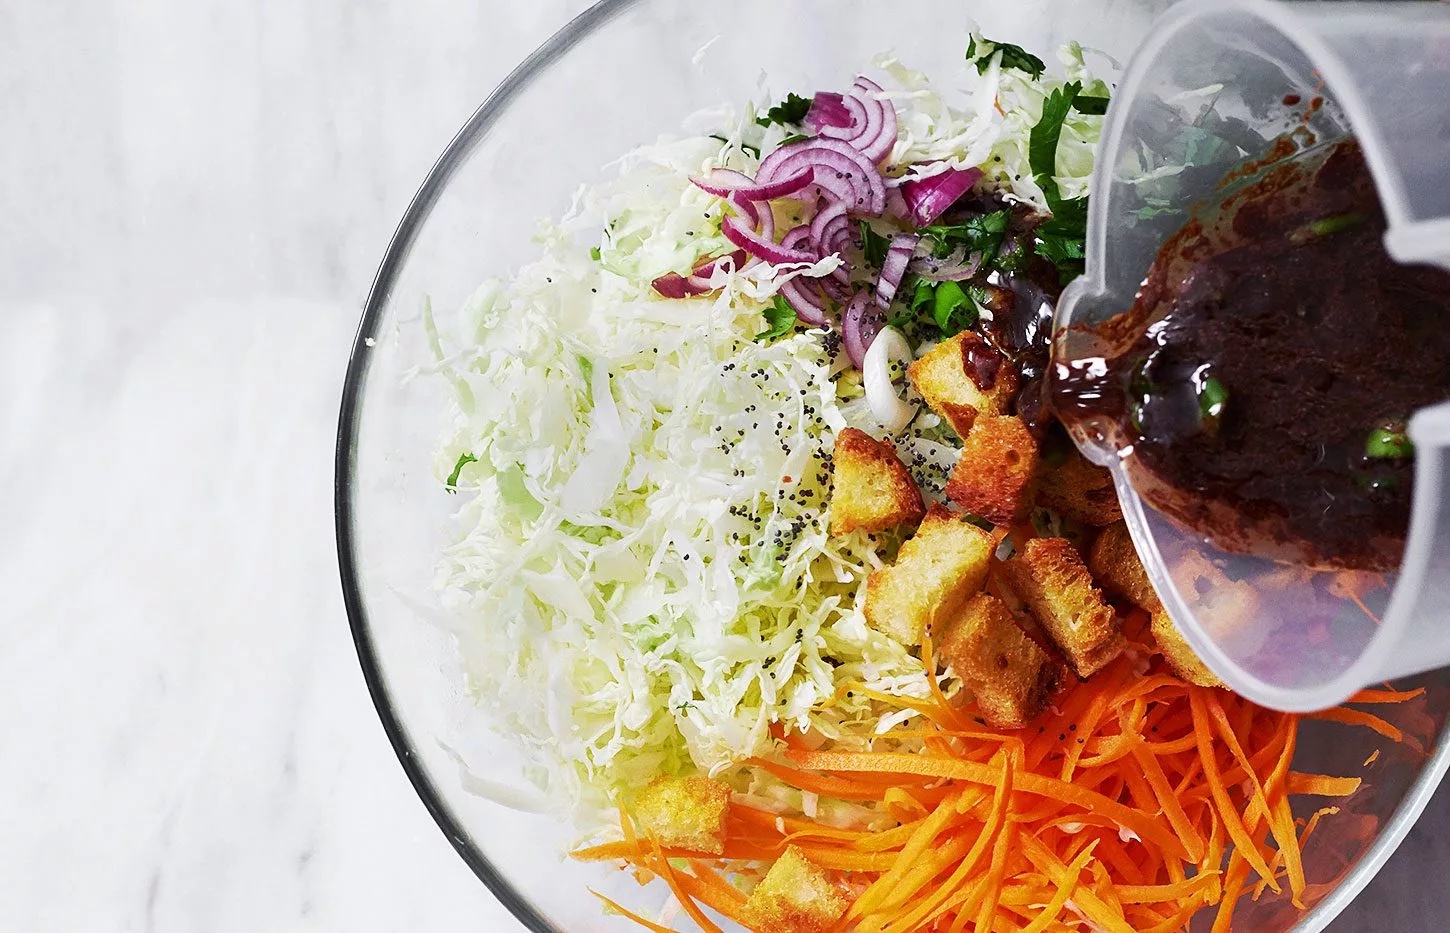 8 Homemade Salad Dressings Recipes